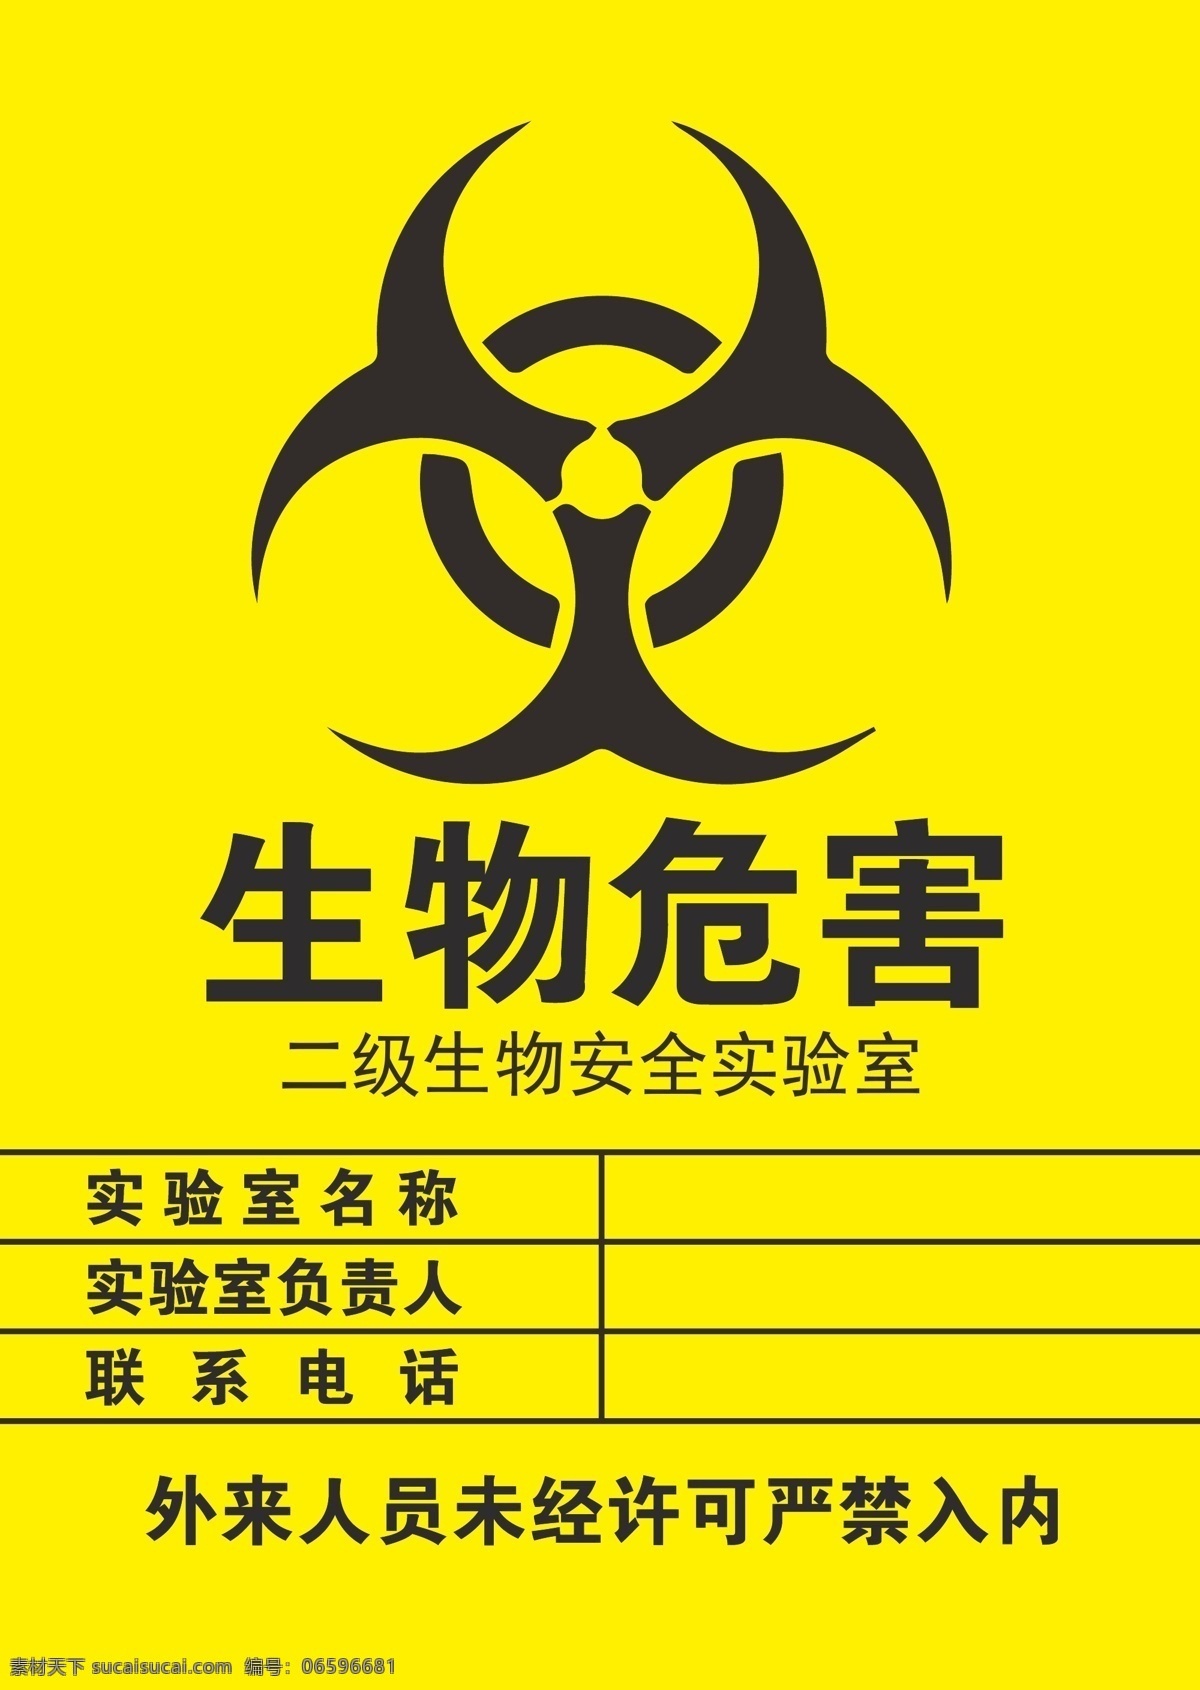 生物危害标识 医院检查 卫生污染物 生物危害 医疗 黄色 垃圾桶 b超室 放射科 标志图标 公共标识标志